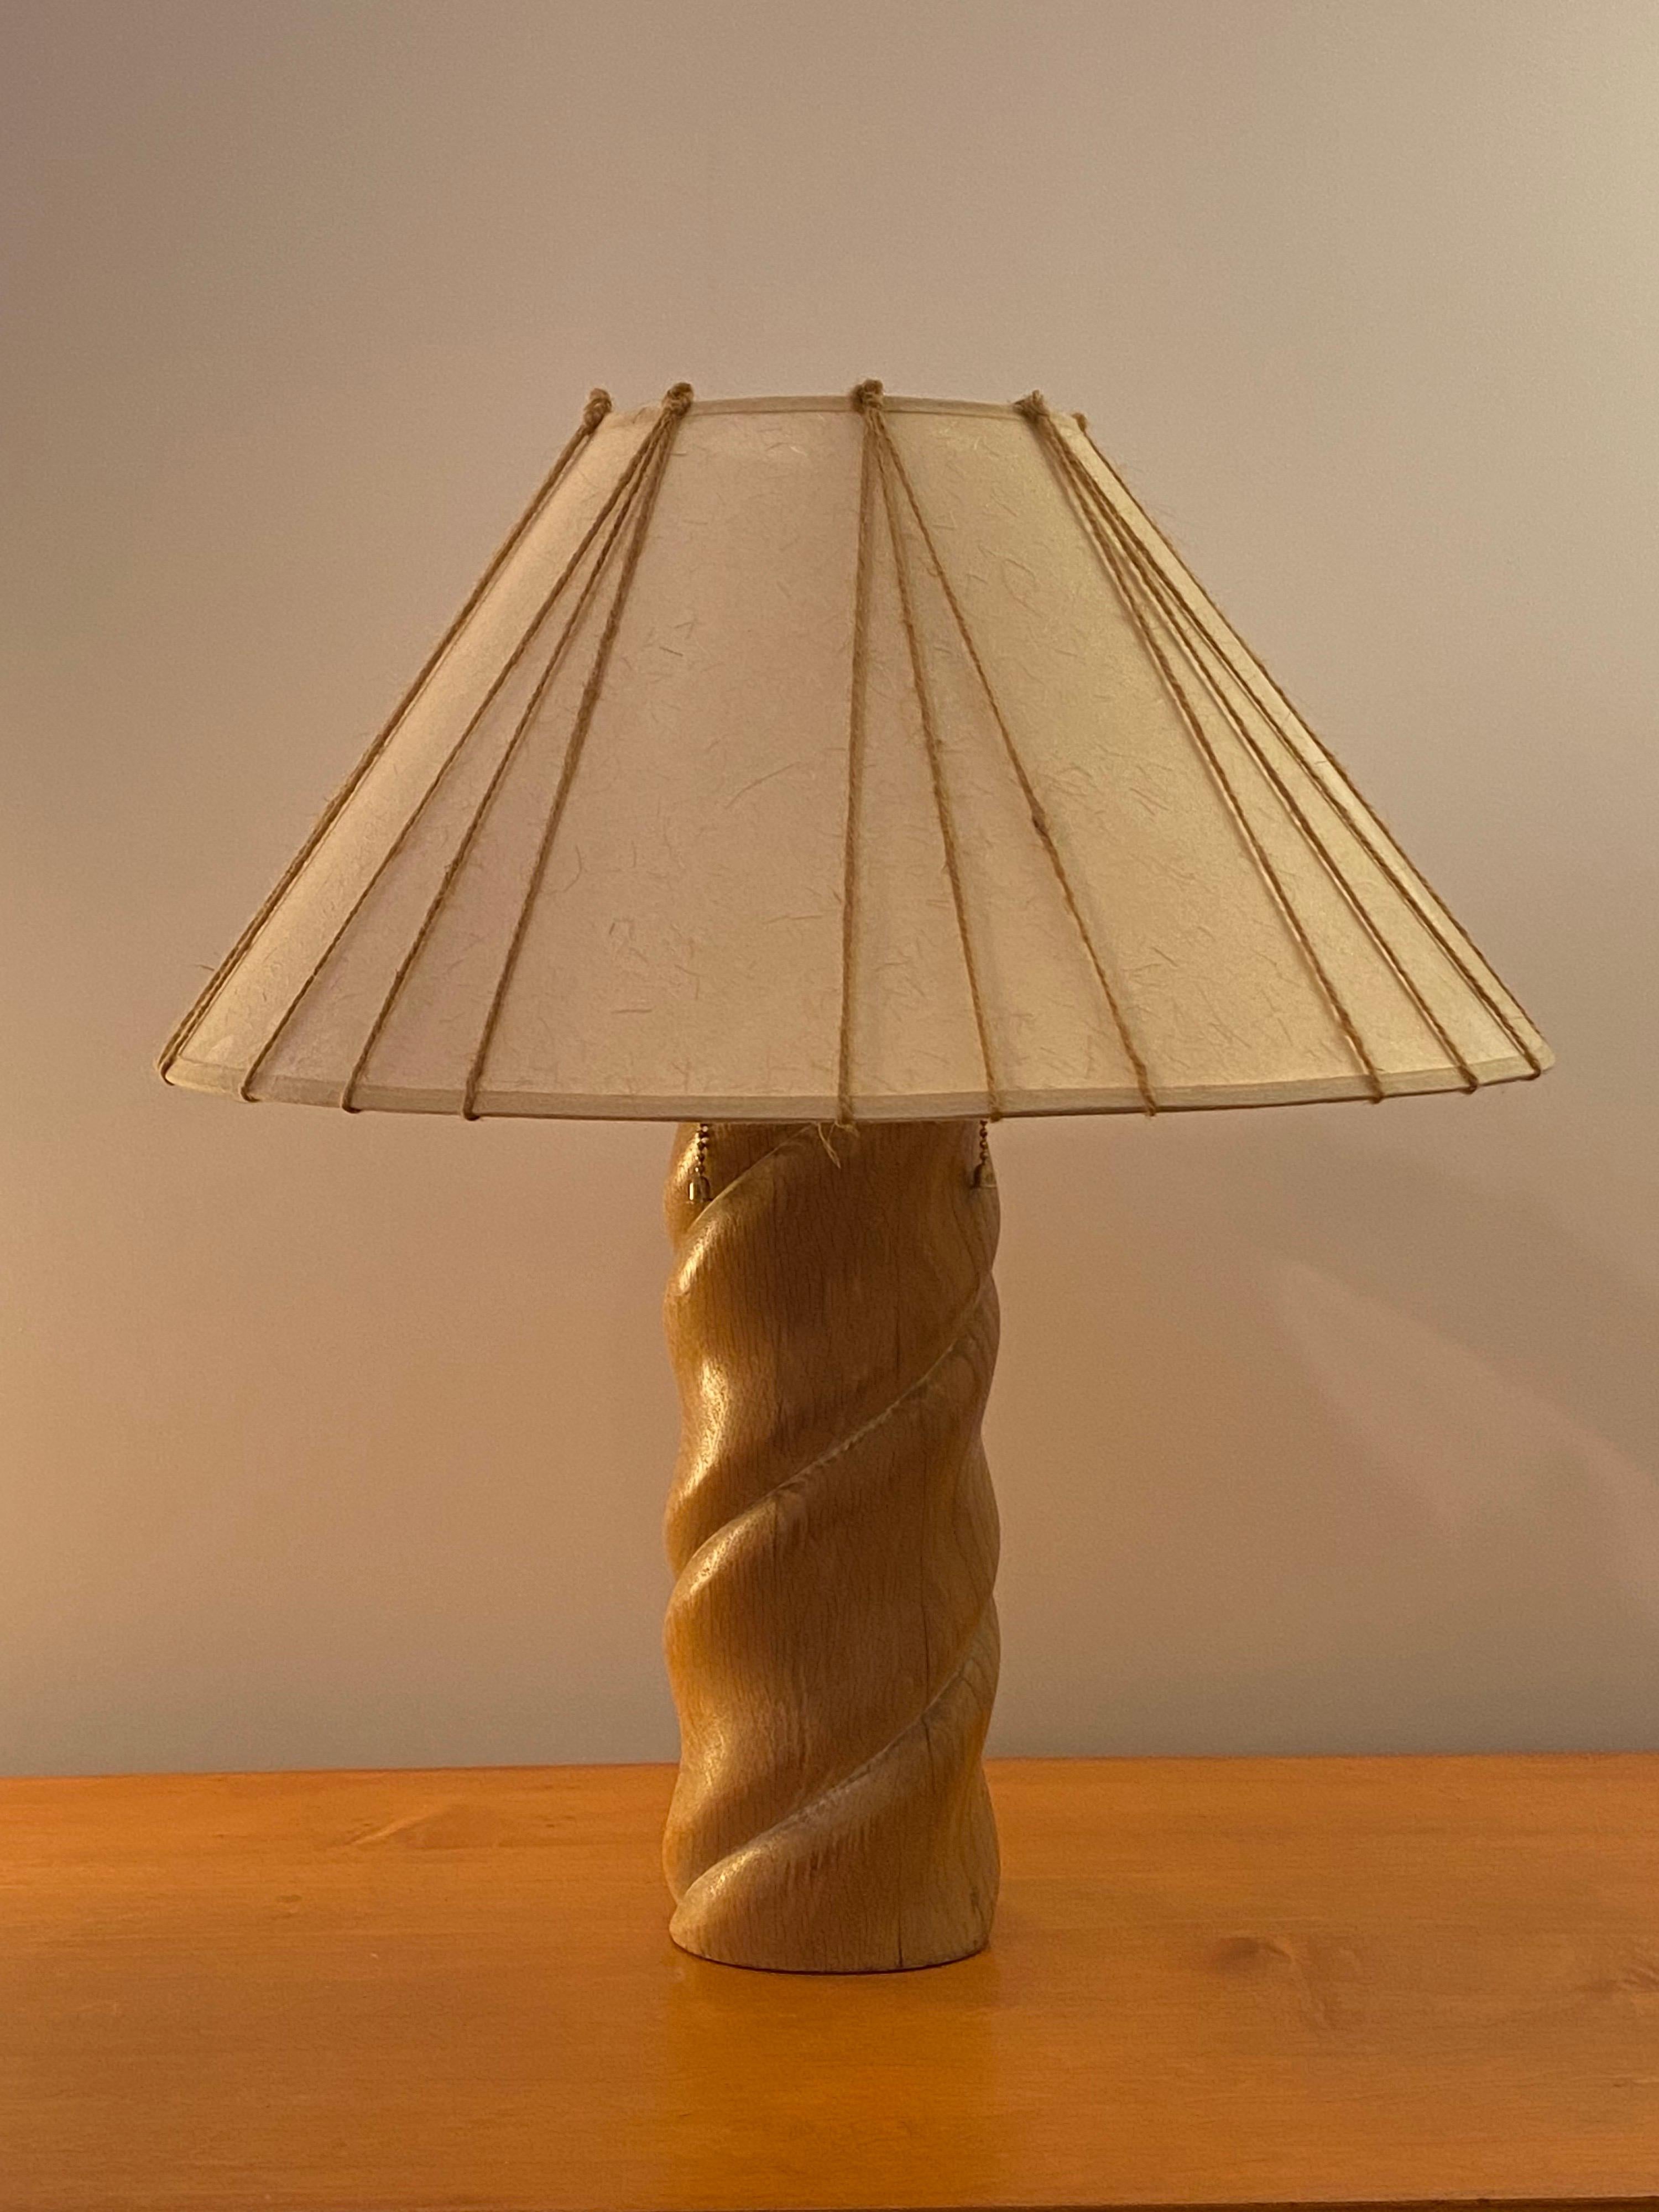 Russel Wright Tischlampe aus gedrechseltem Holz mit leicht gebeizter weißer Oberfläche. Anfang der 1950er Jahre von der Fairmont Lamp Company hergestellte Lampe. Der originale Lampenschirm wurde mit Papier überzogen, das dem Original sehr ähnlich